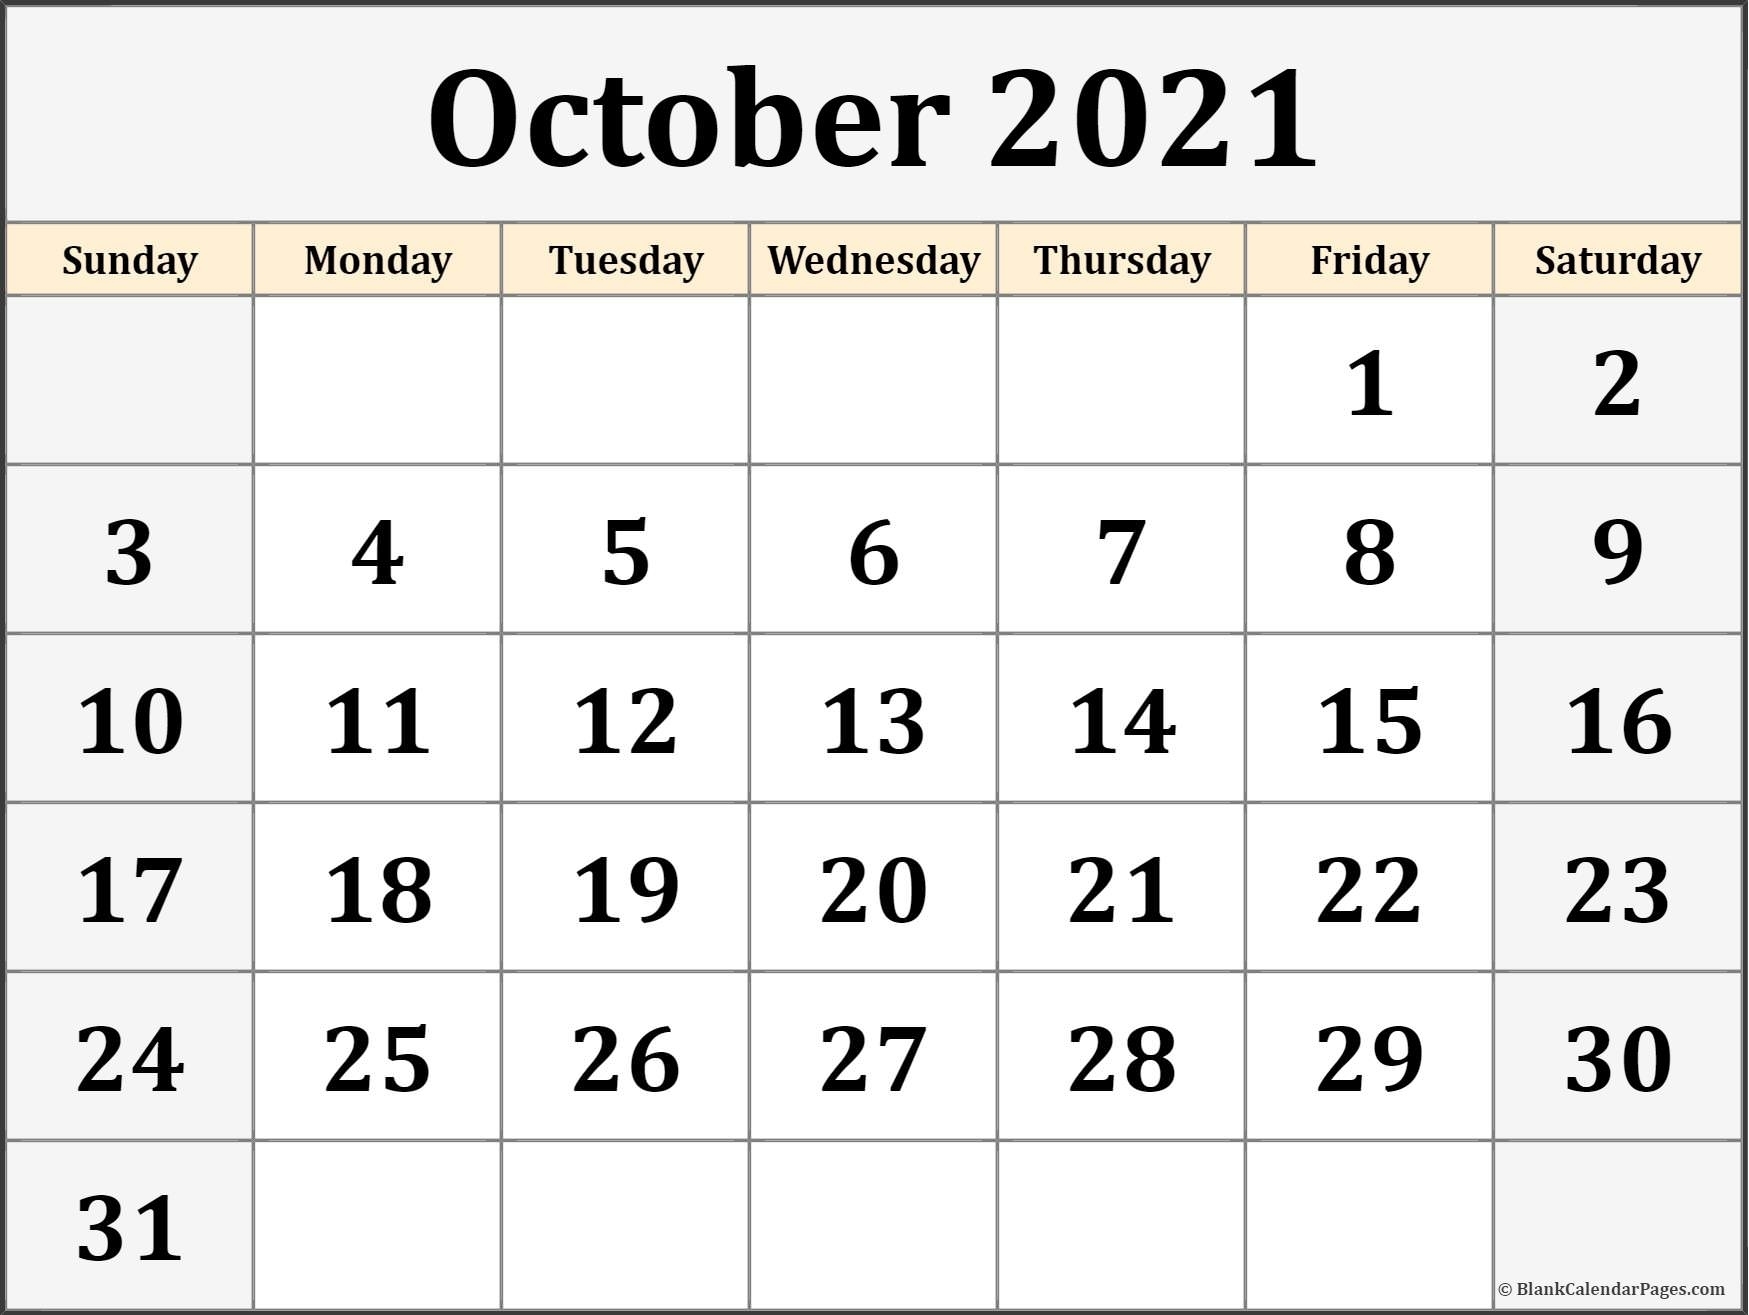 October 2021 Calendar | Free Printable Calendar September October November December 2021 Calendar